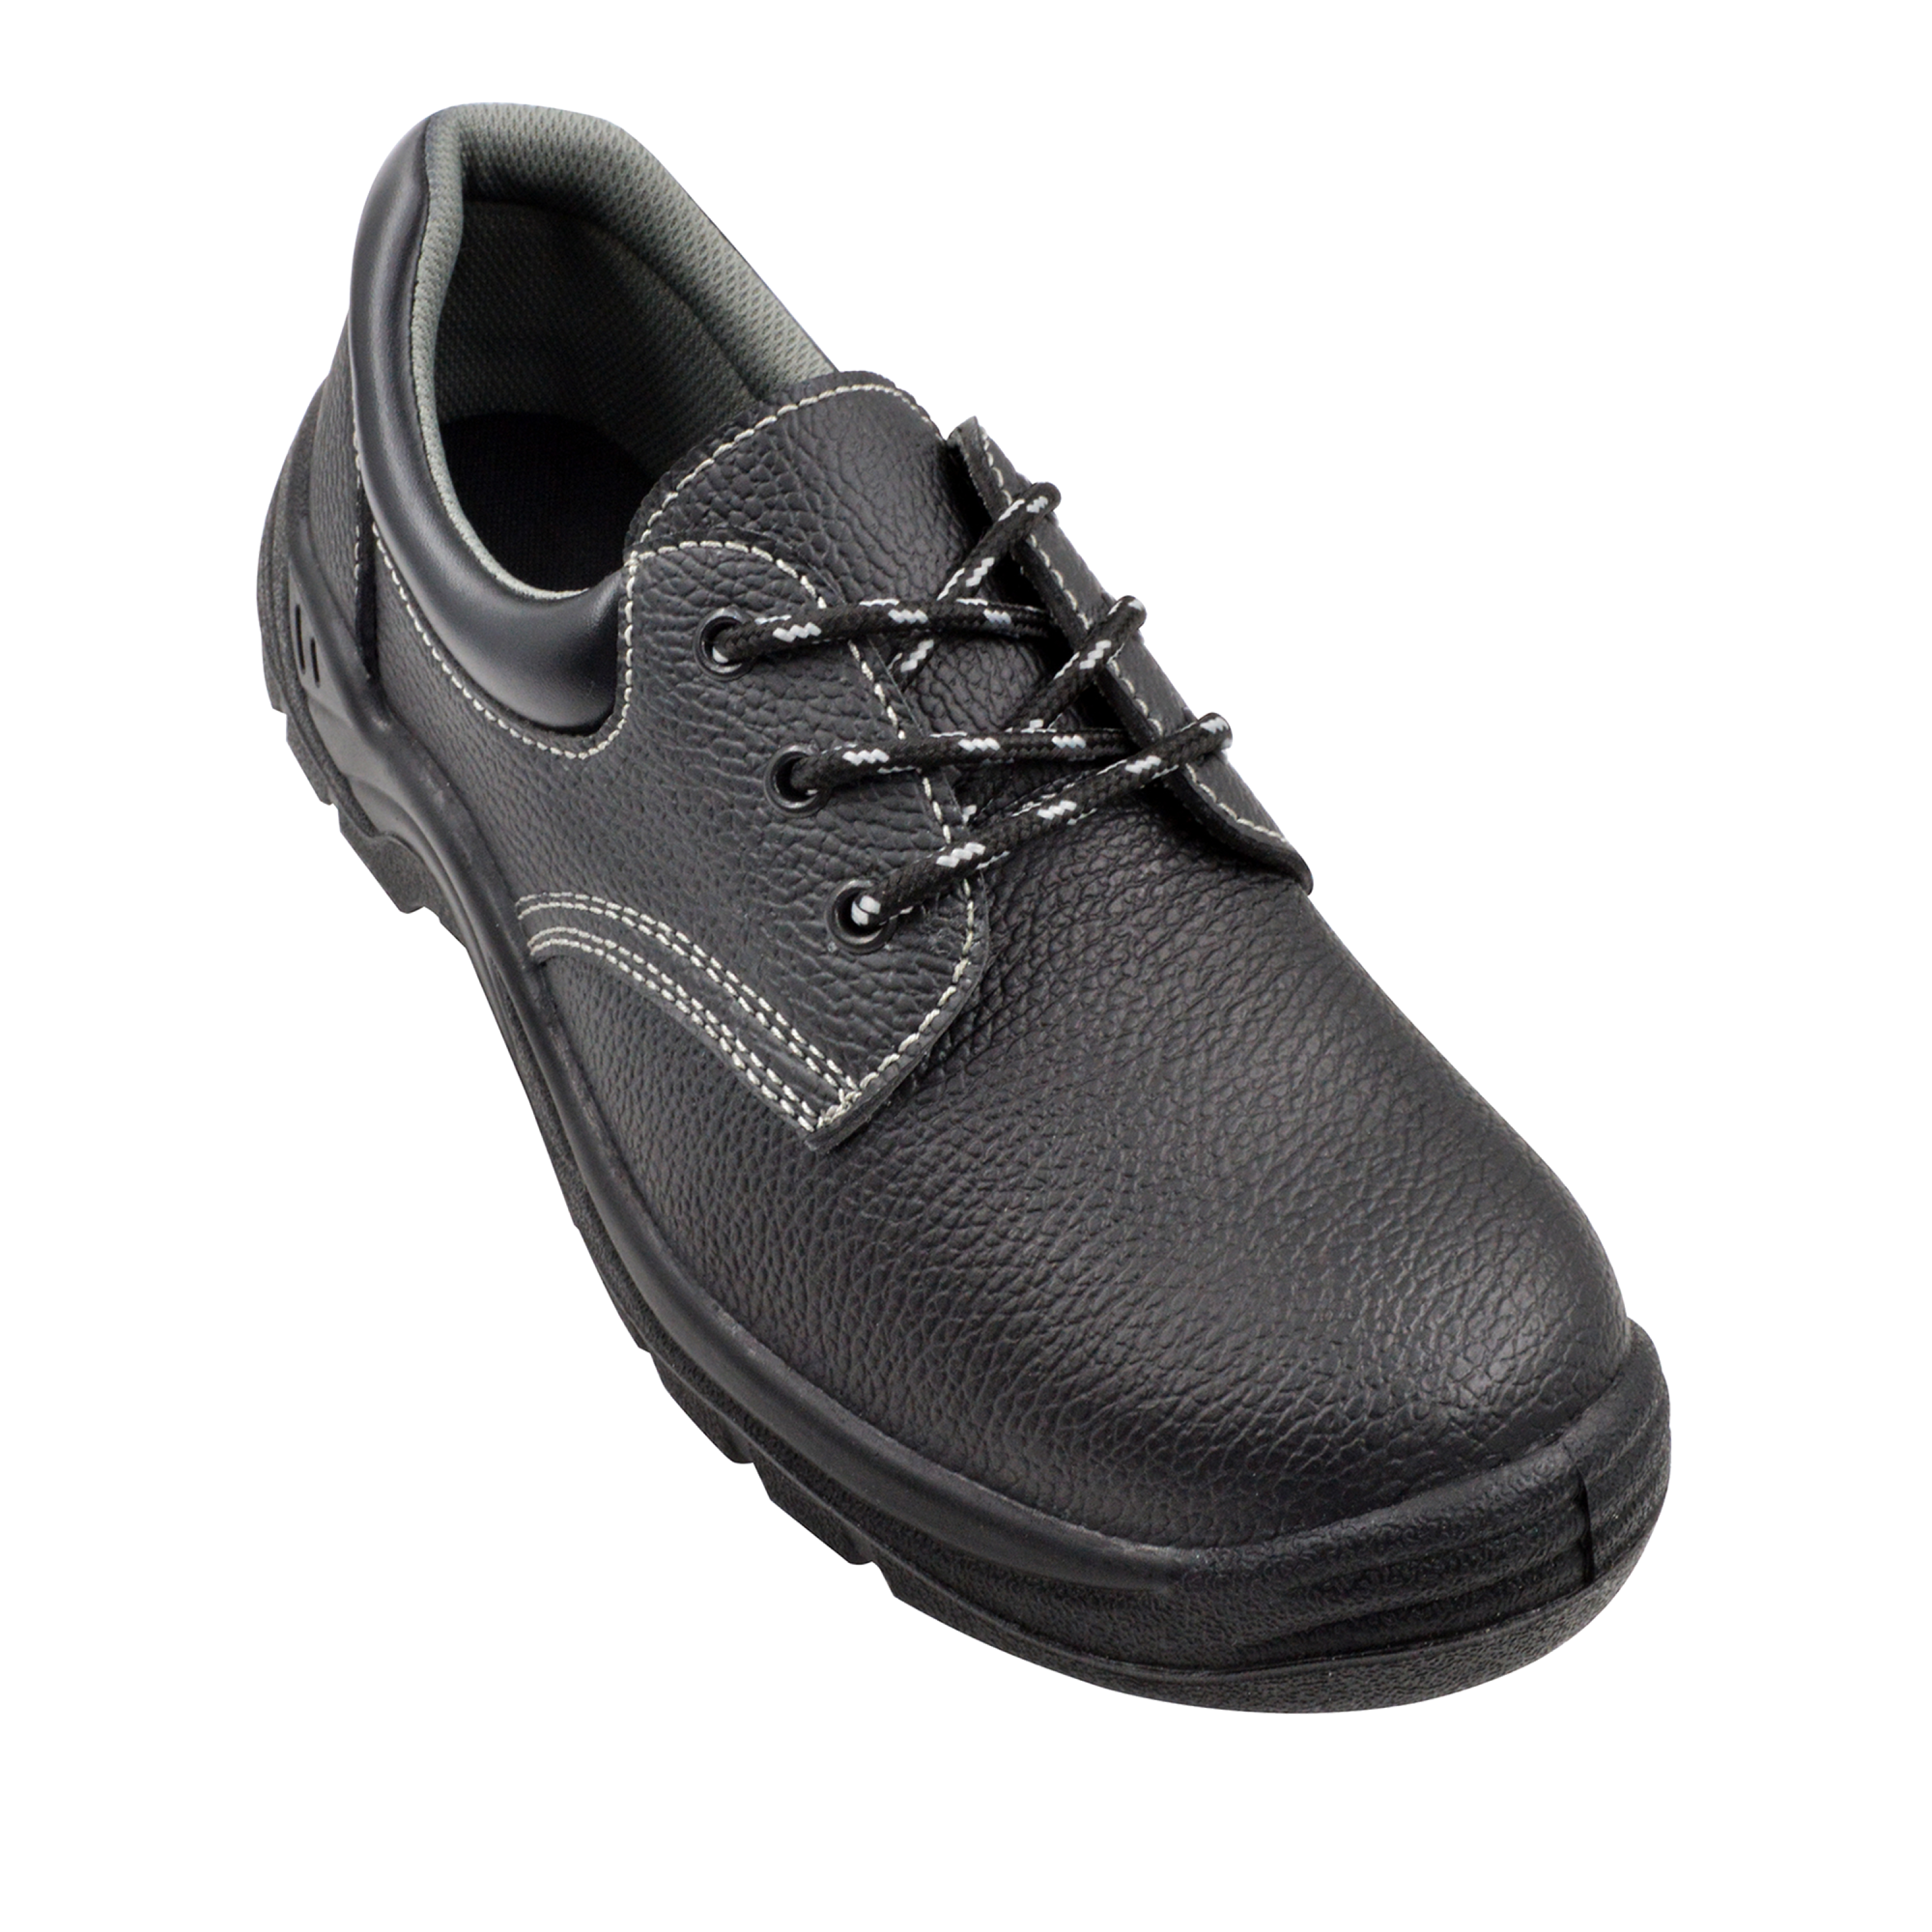 Zapatos de seguridad p negro negro t42